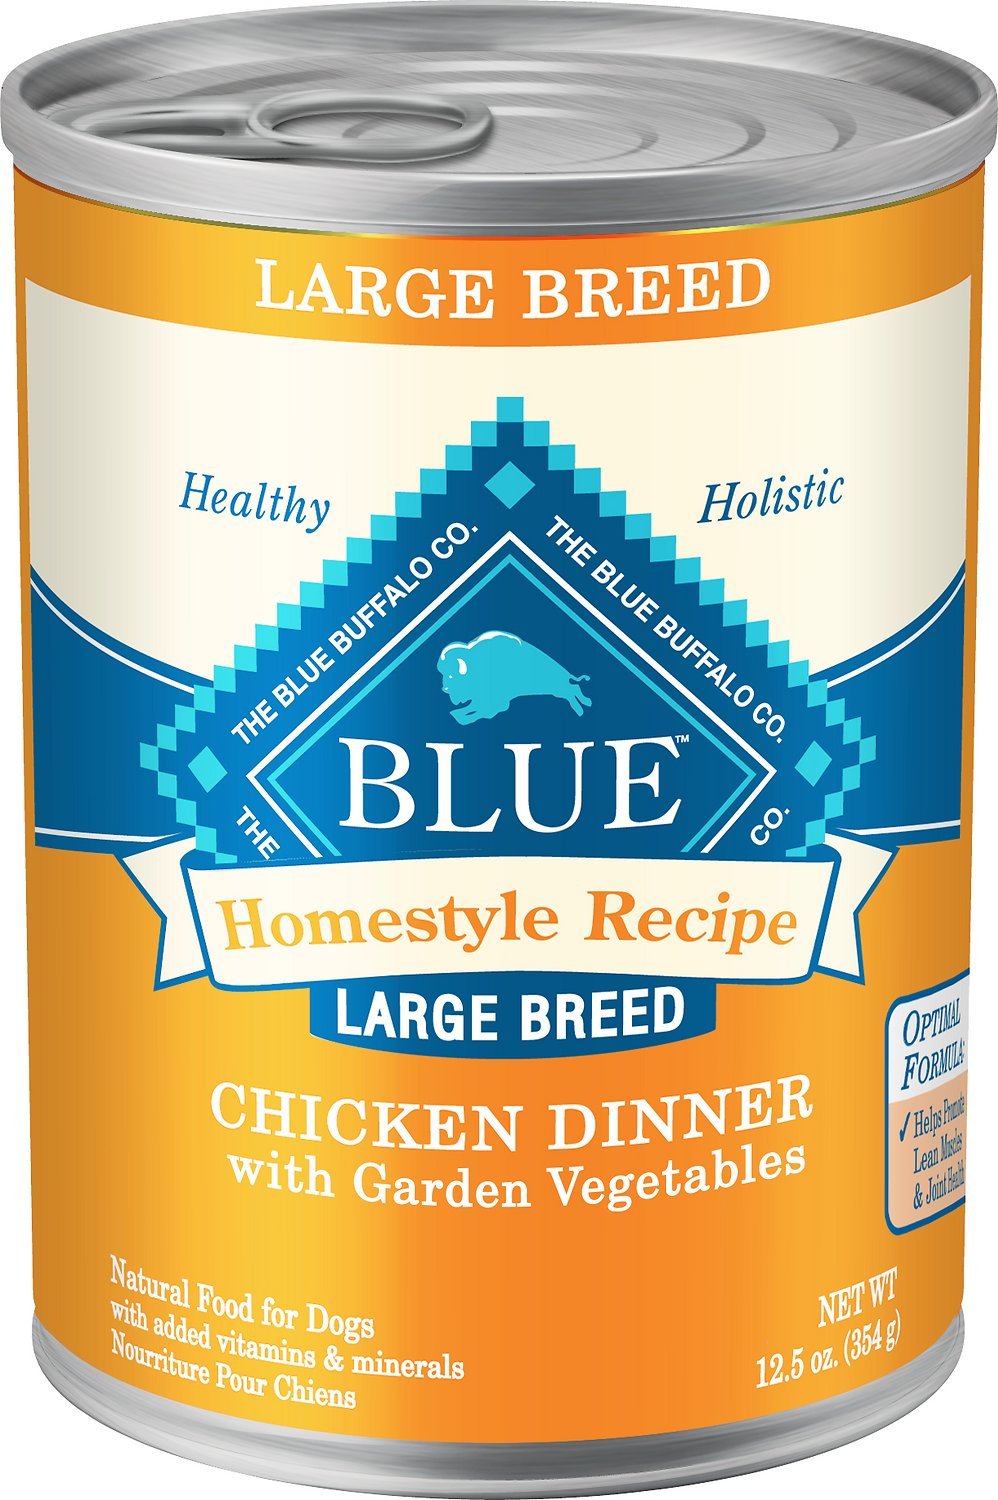 Blue Buffalo canned food